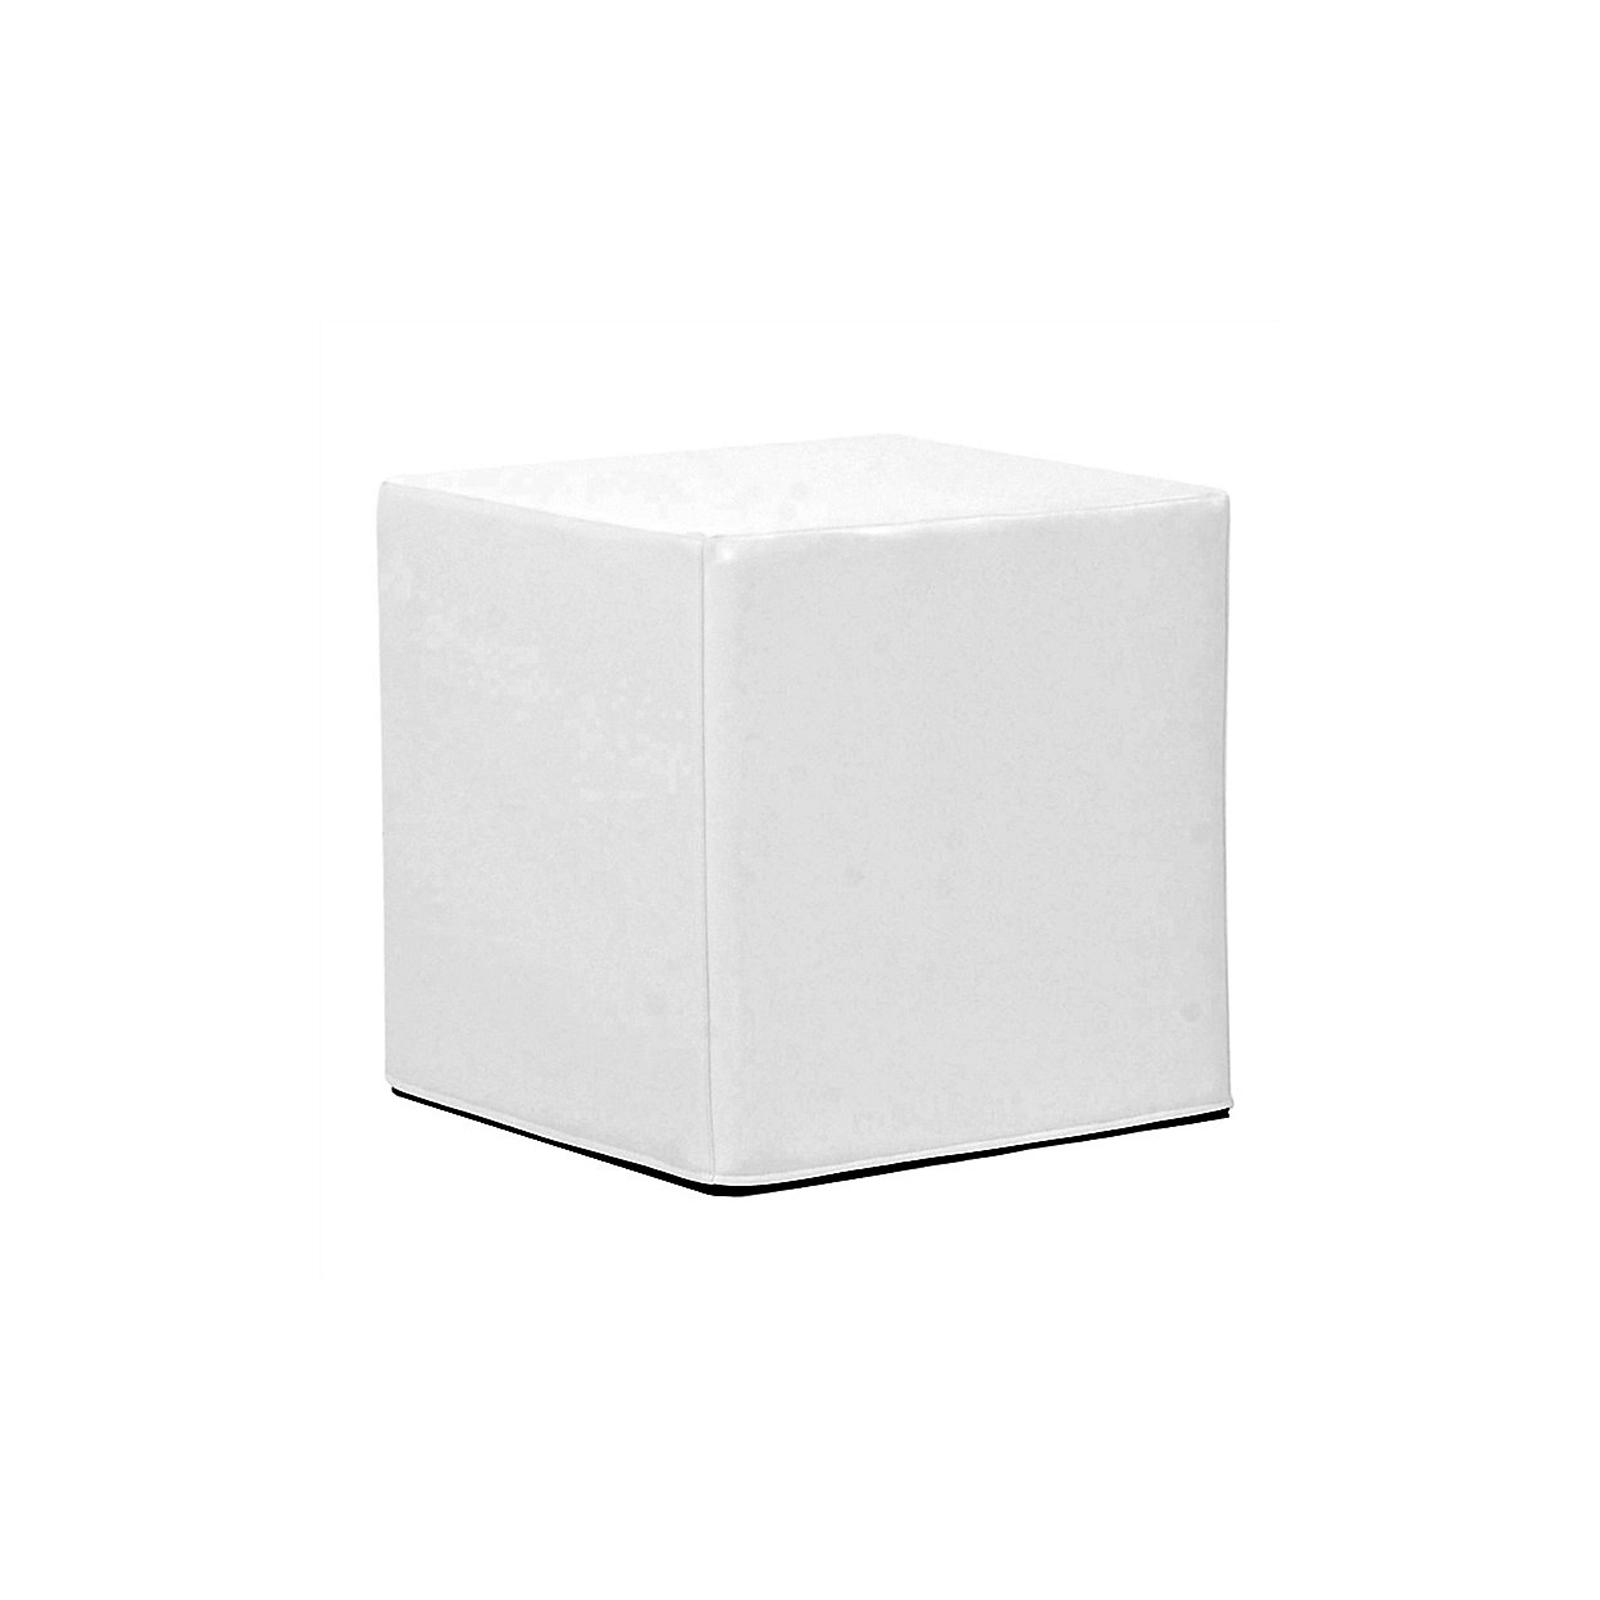 Aqara cube. Белый куб. Светильник "куб". Белые кубические кресла. Белый куб для фото.